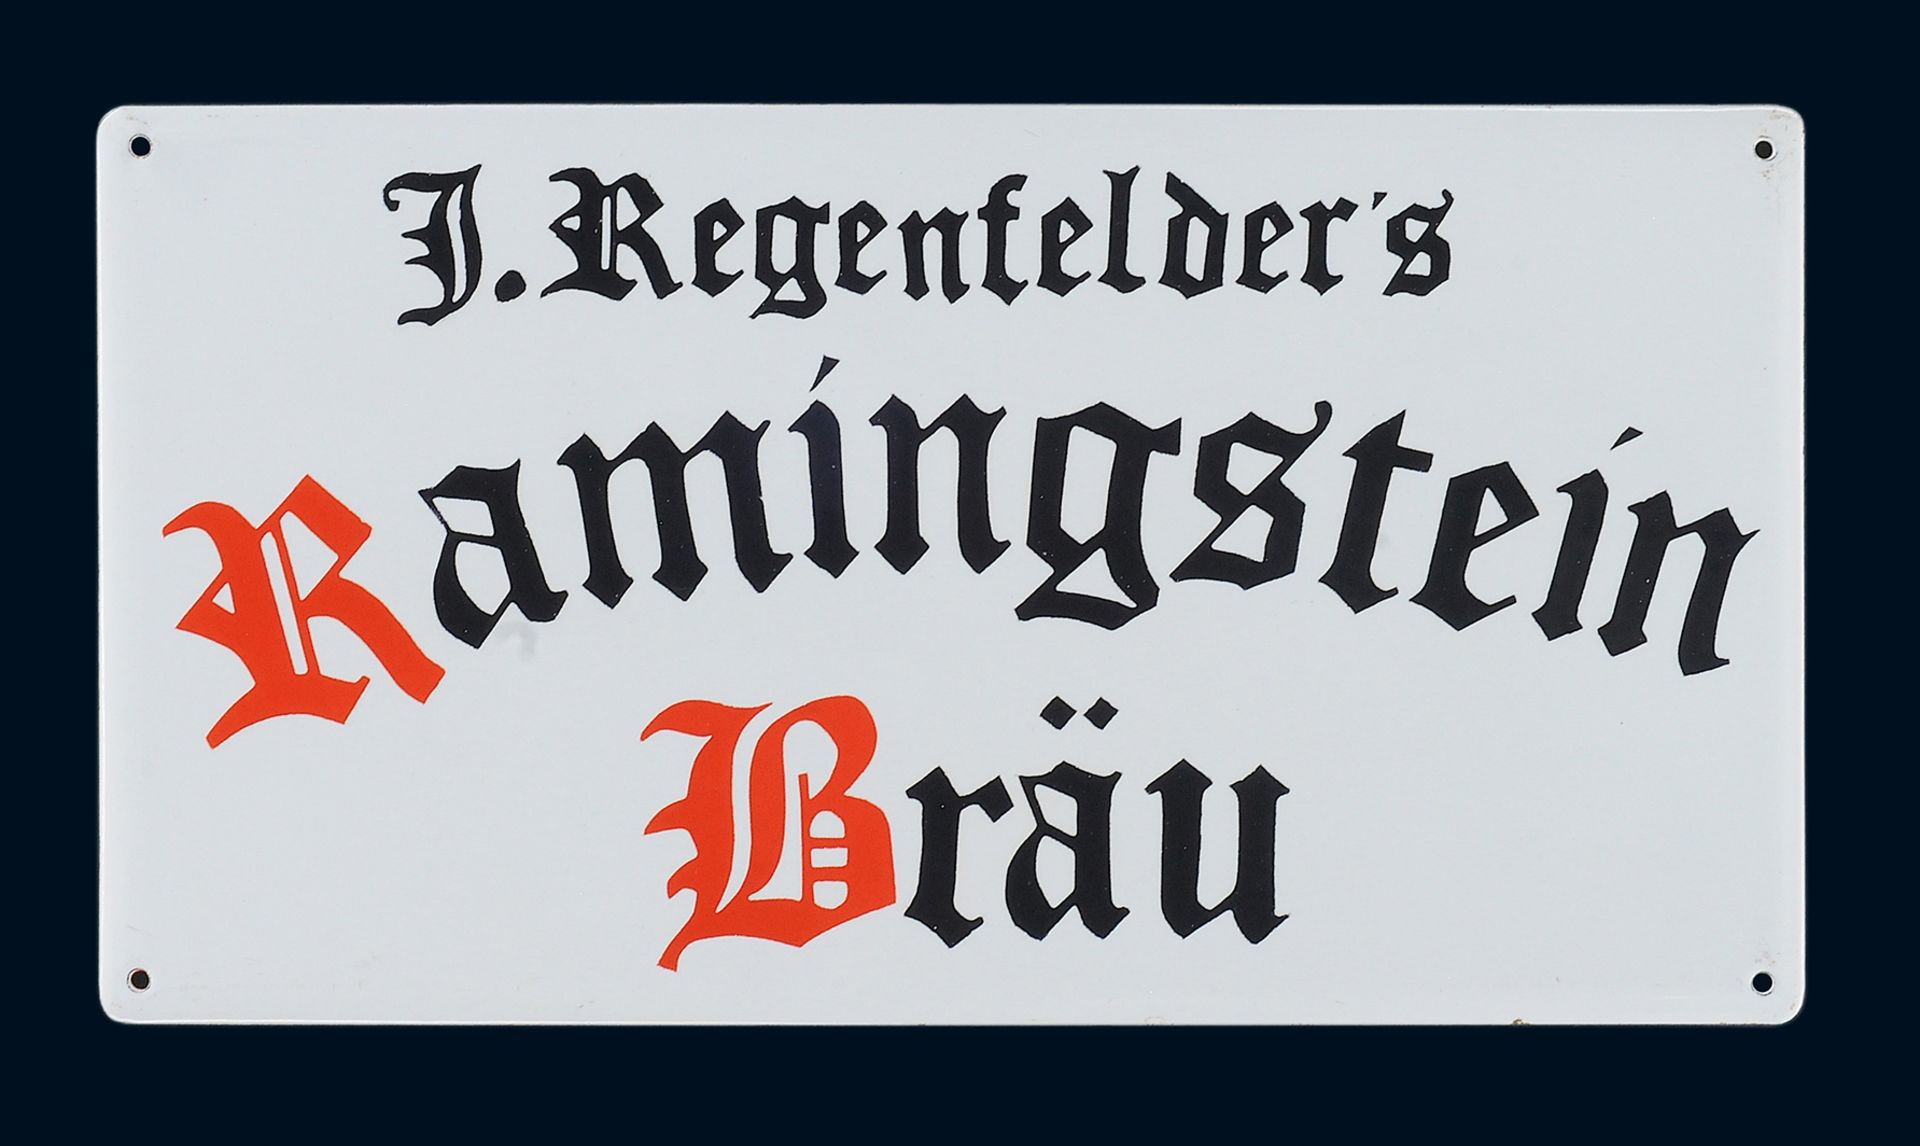 J. Regenfelder*s Ramingstein Bräu